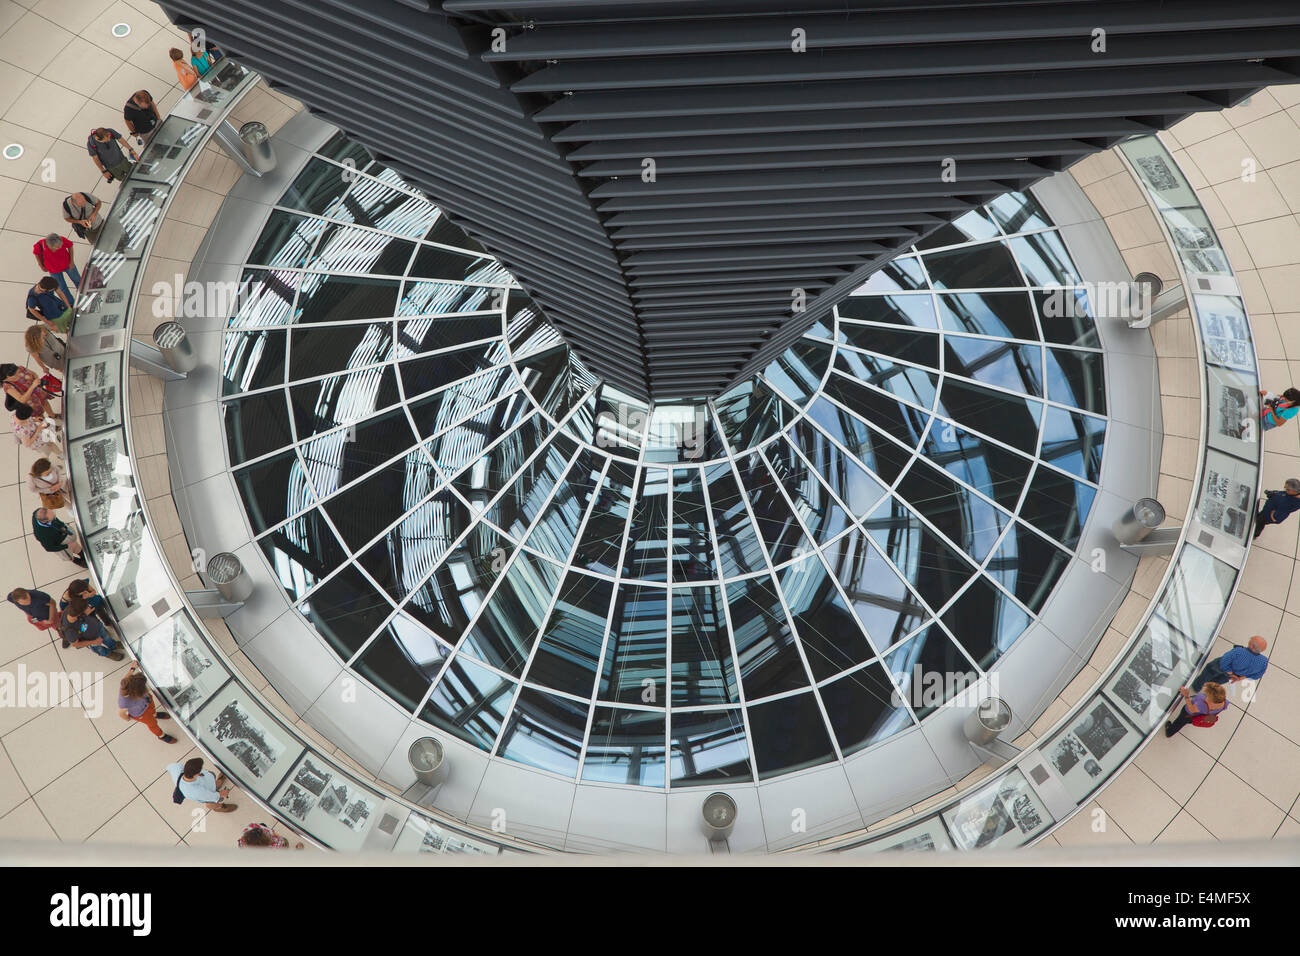 Alemania, Berlín Mitte, el edificio del Reichstag (Parlamento) con una cúpula de cristal diseñada por Norman Foster. Foto de stock